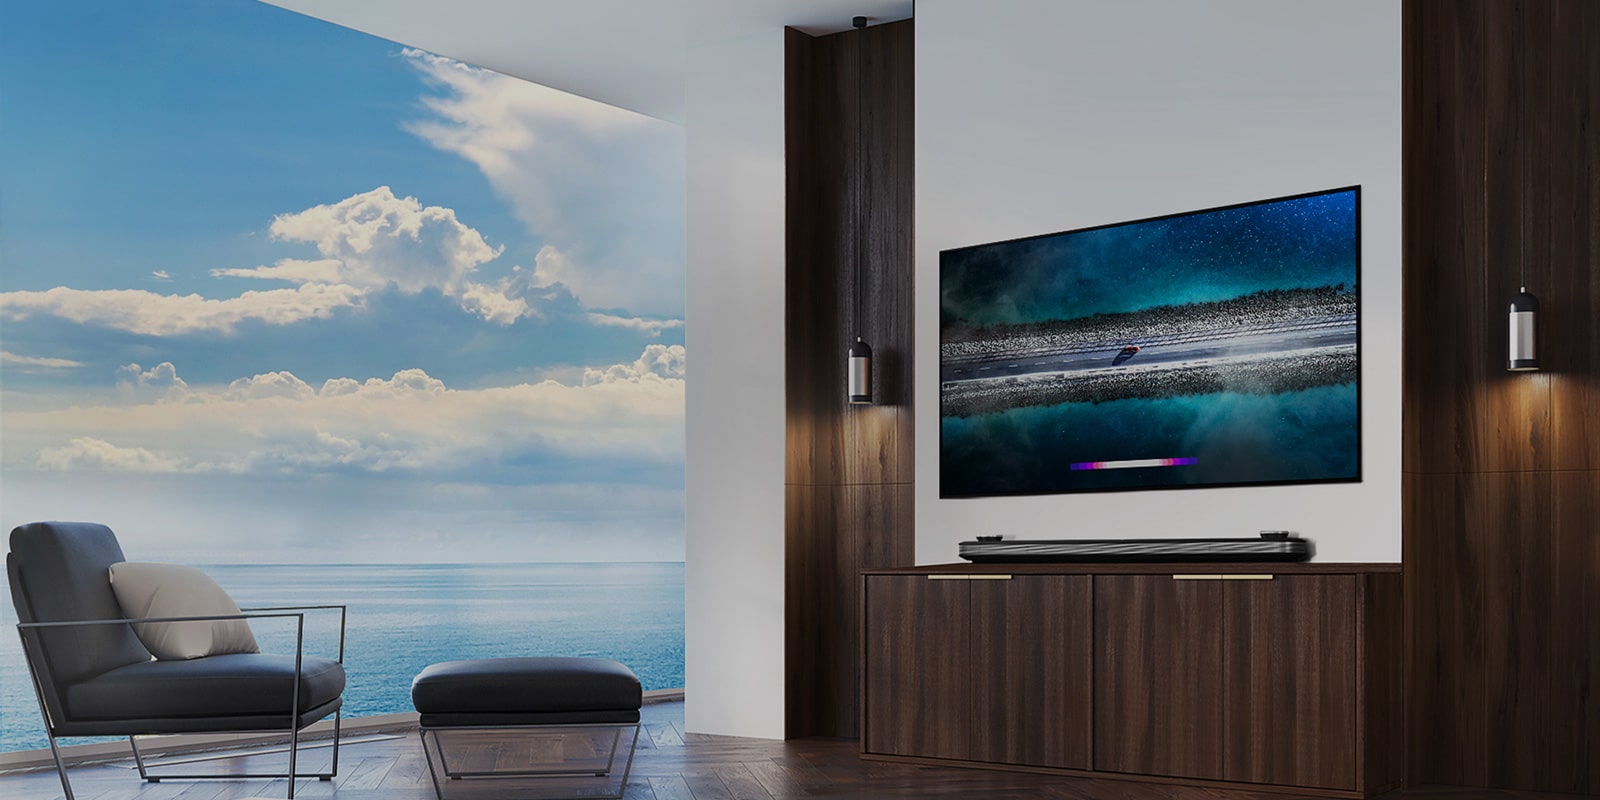 Η LG SIGNATURE OLED TV W9 είναι κρεμασμένη στον τοίχο και ένα συμβούλιο βρίσκεται ακριβώς μπροστά από την τηλεόραση με τον γαλάζιο ουρανό πάνω από το παράθυρο.